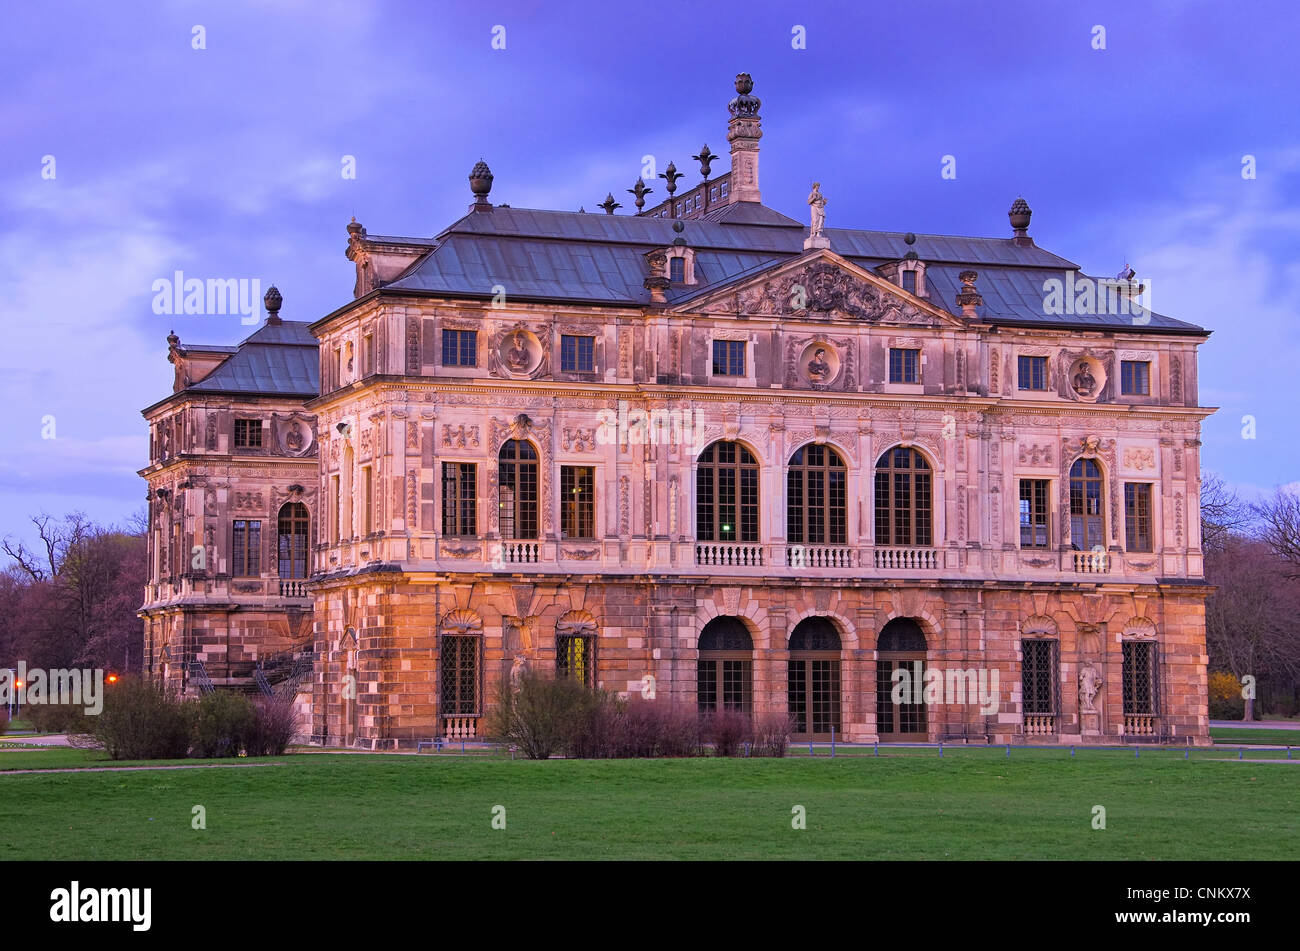 Gartenpalais Dresda - Dresden garden palace 01 Foto Stock